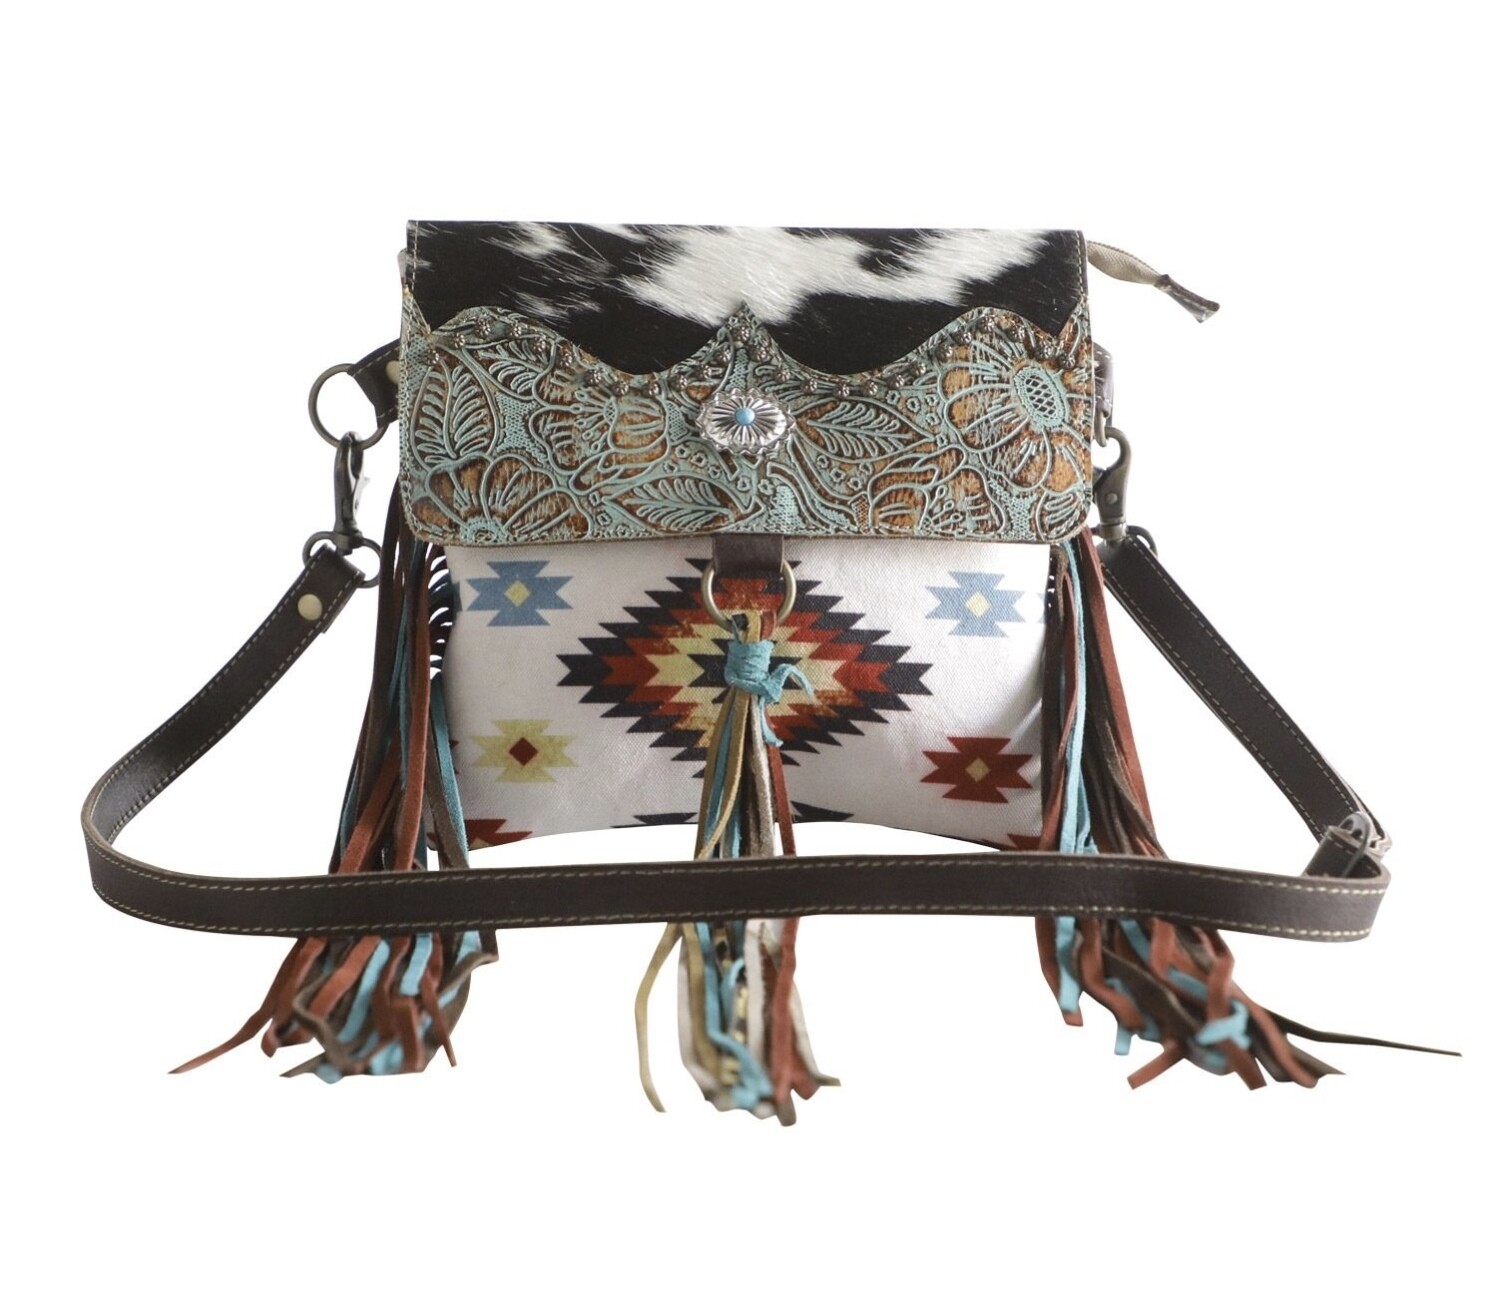 Western Carpet Bag Handbag Leather Fringe Aztec Pattern